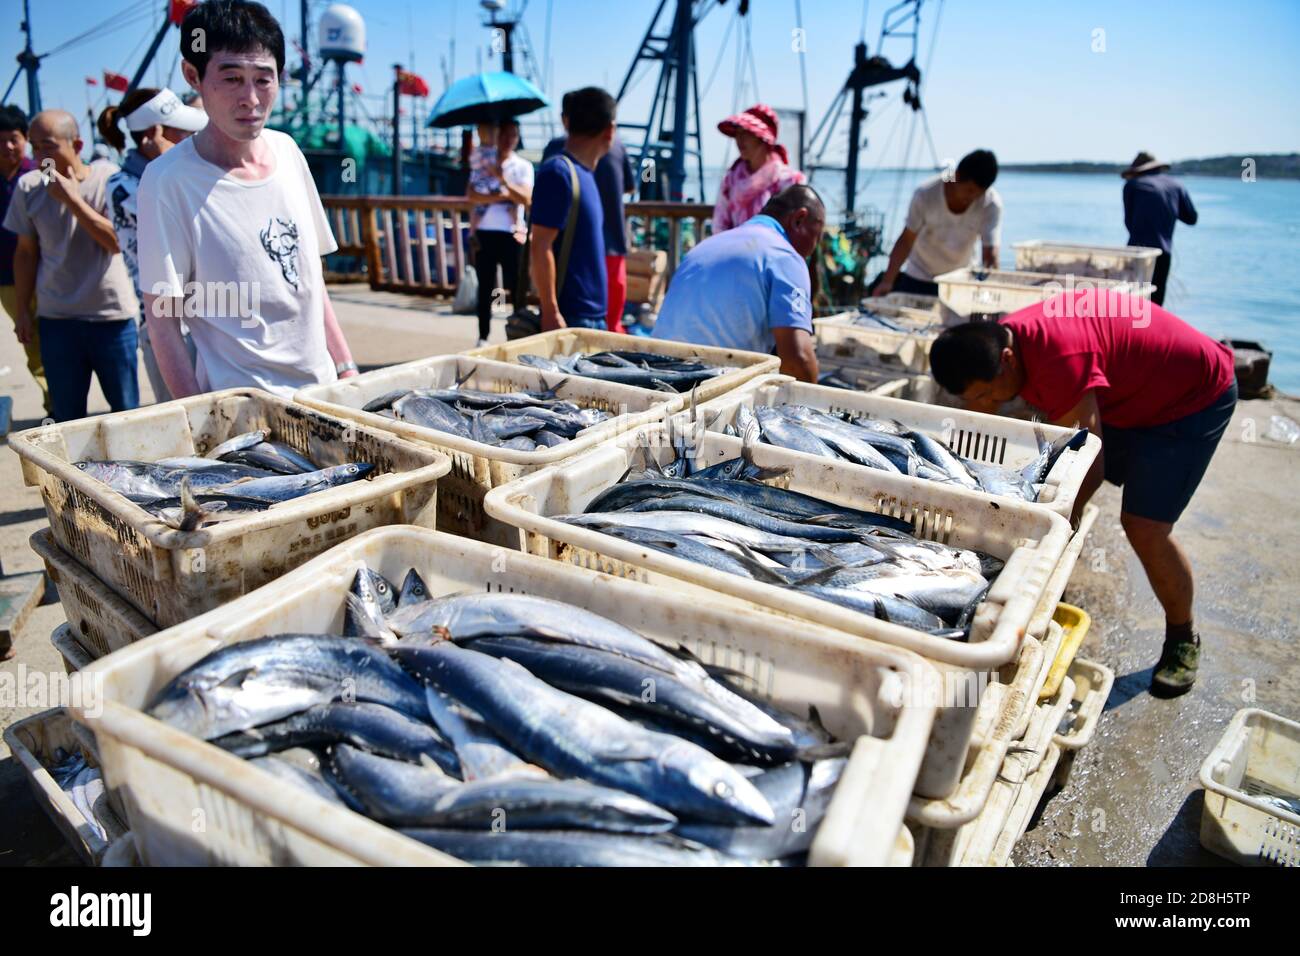 Los ciudadanos acuden al mercado de pescado situado en el puerto, donde los  pescadores venden mariscos tan pronto como regresan del mar, en el primer  fin de semana después del Fotografía de